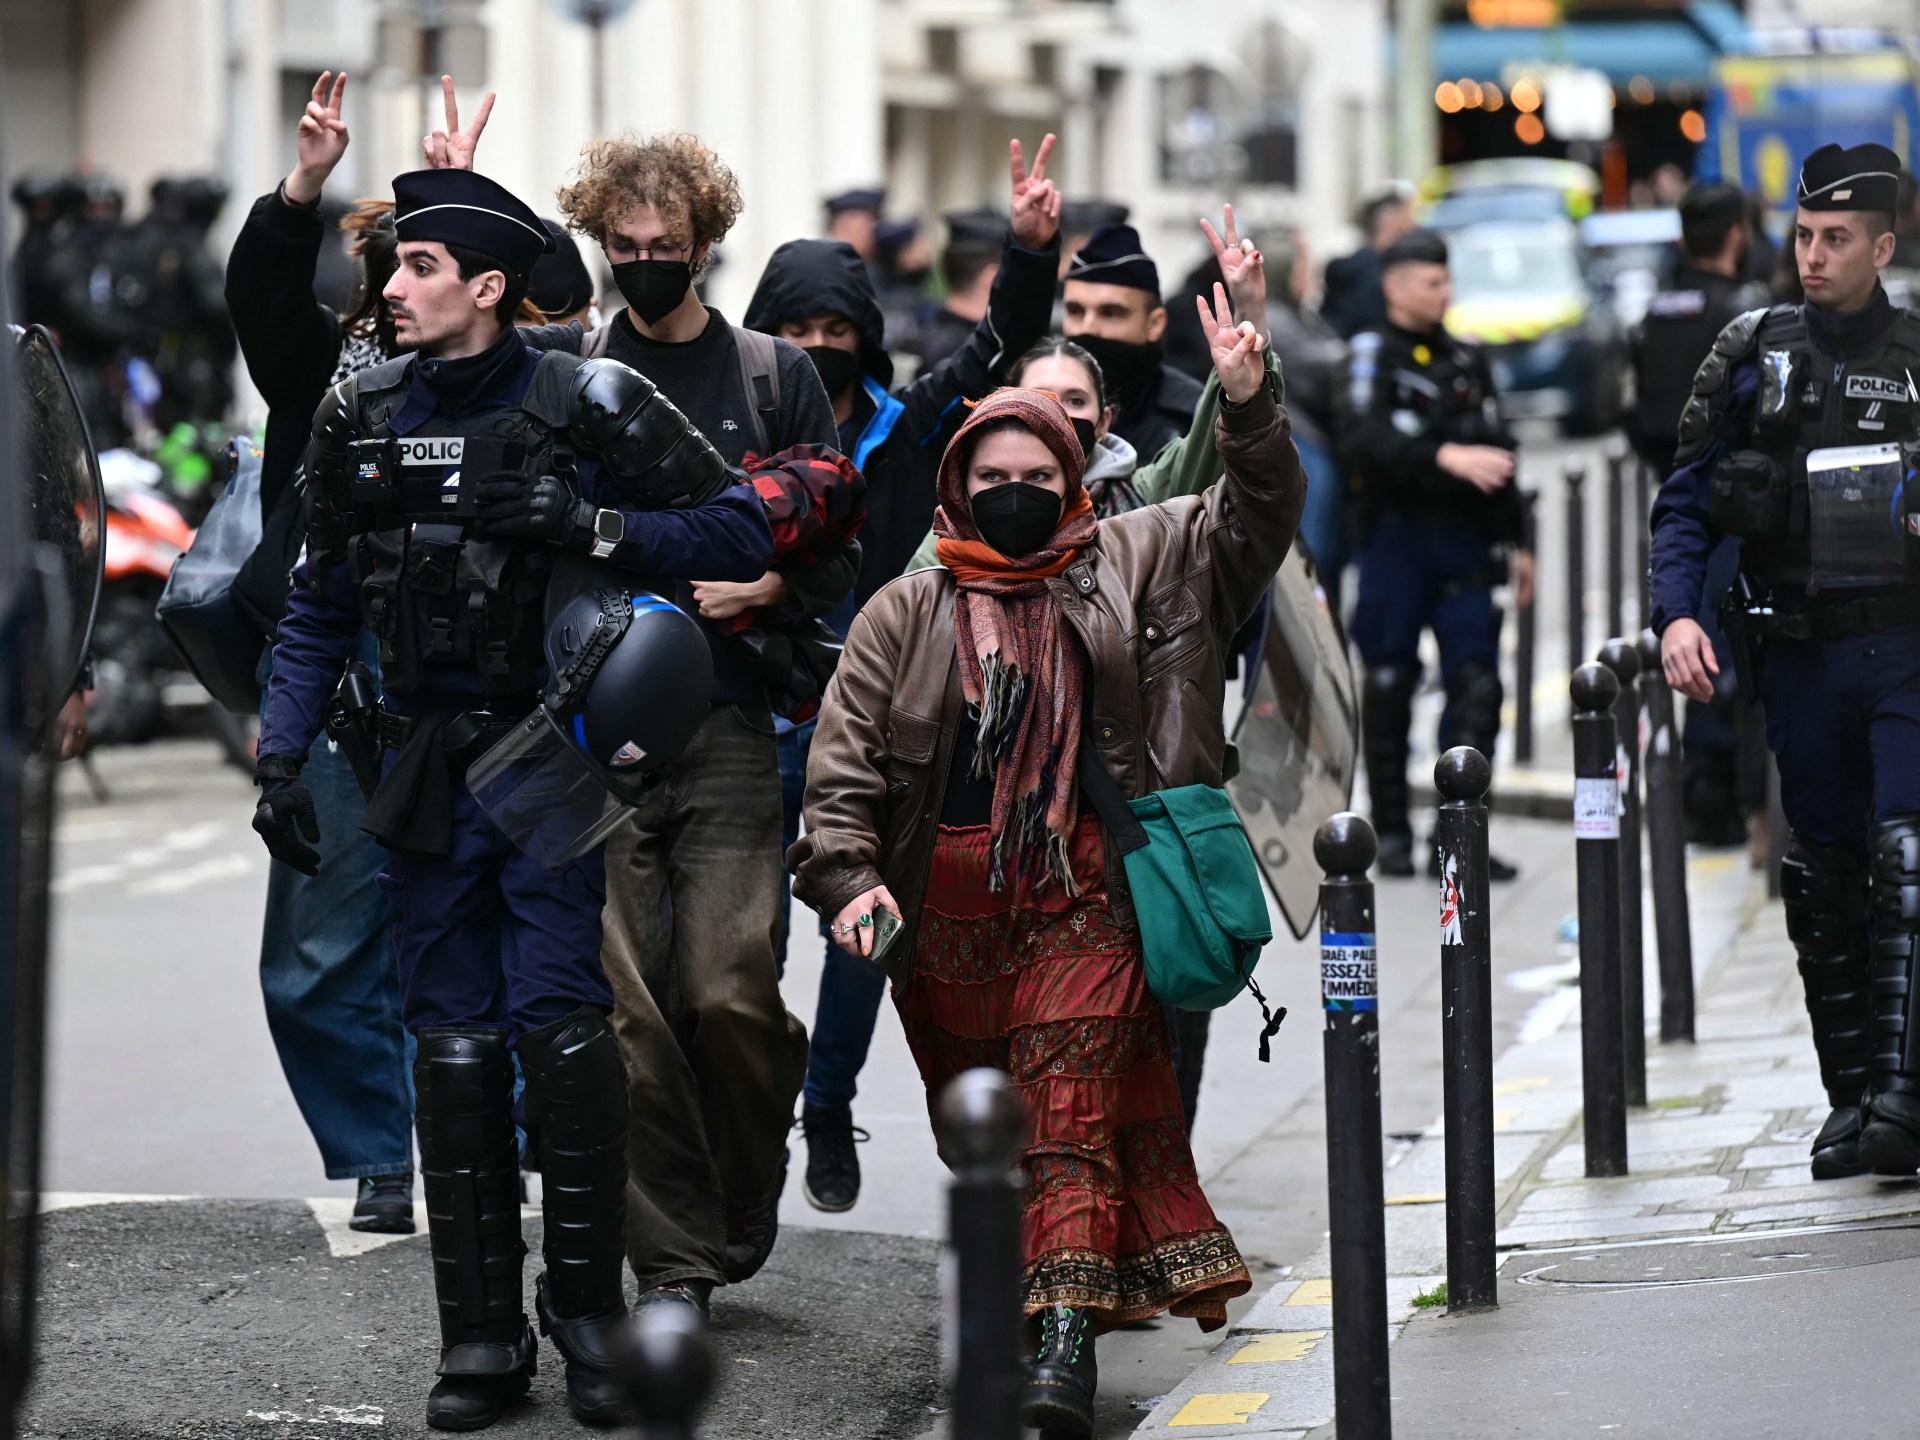 الشرطة تطرد طلاباً مؤيدين للفلسطينيين من جامعة ساينس بو في باريس |  أخبار الحرب الإسرائيلية على غزة